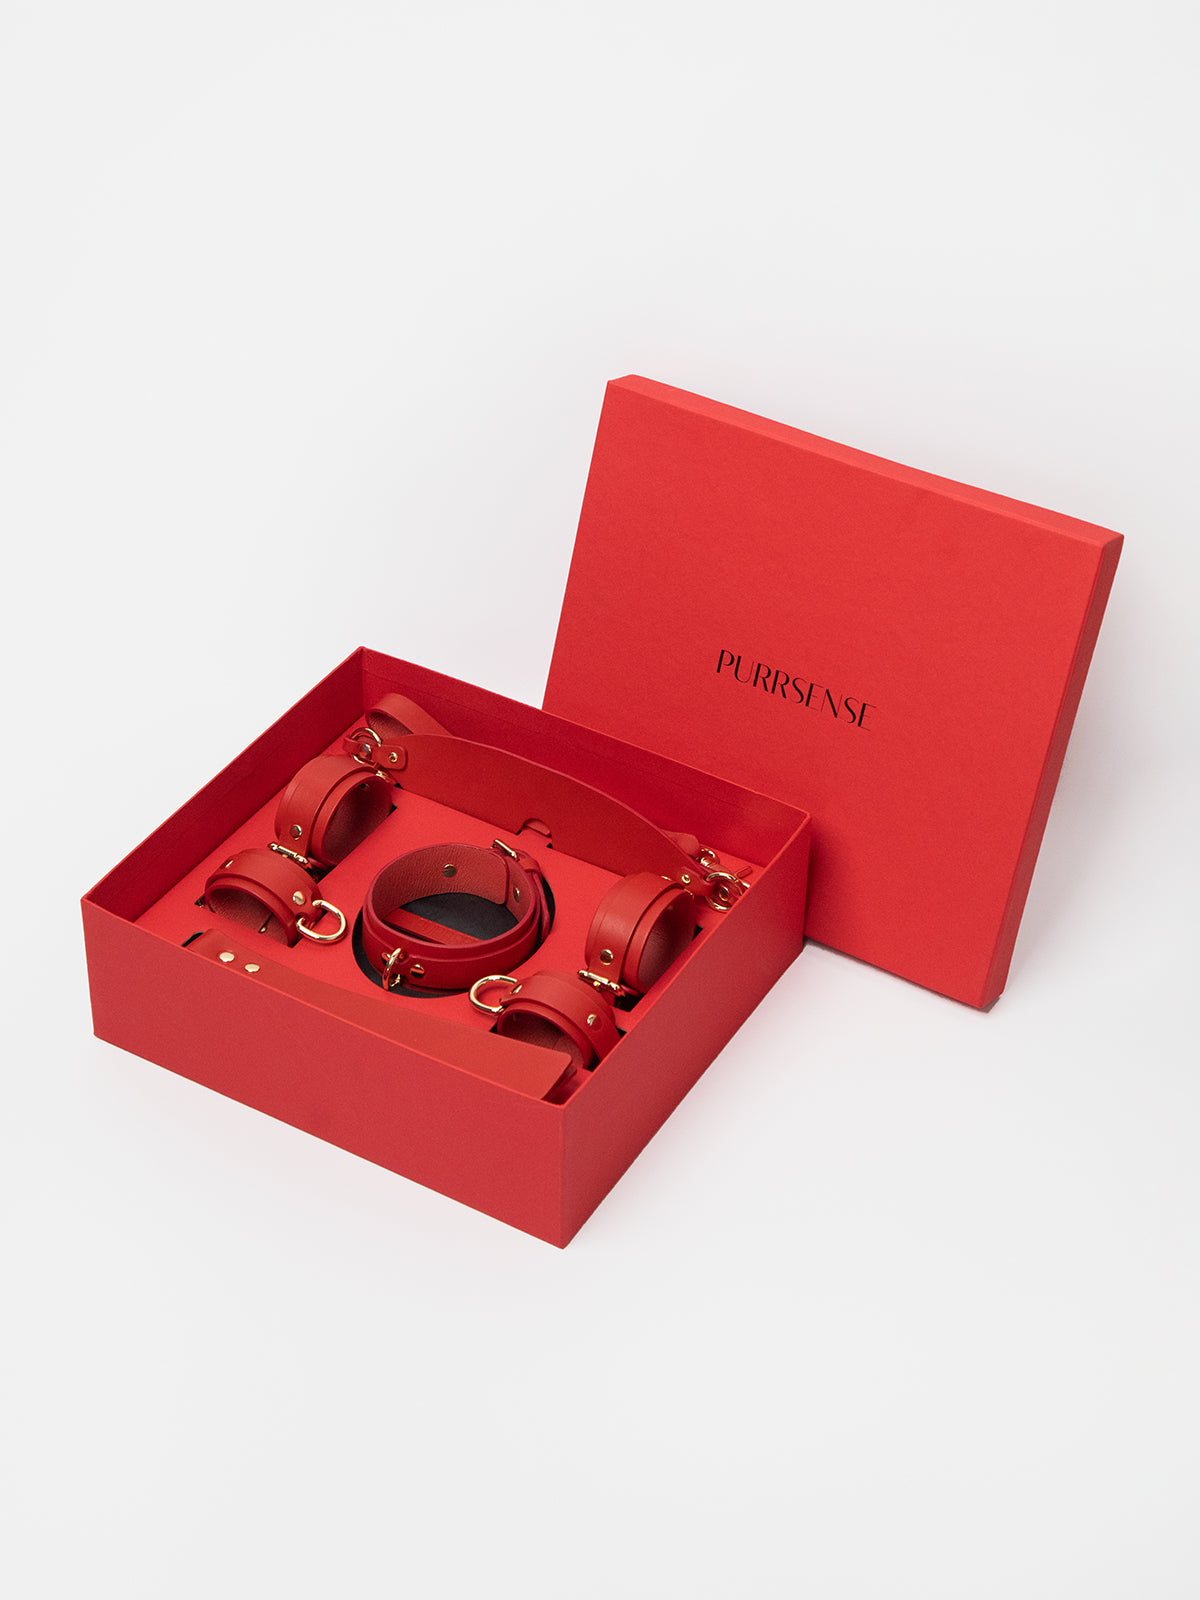 Pleasure Box 1 in Red